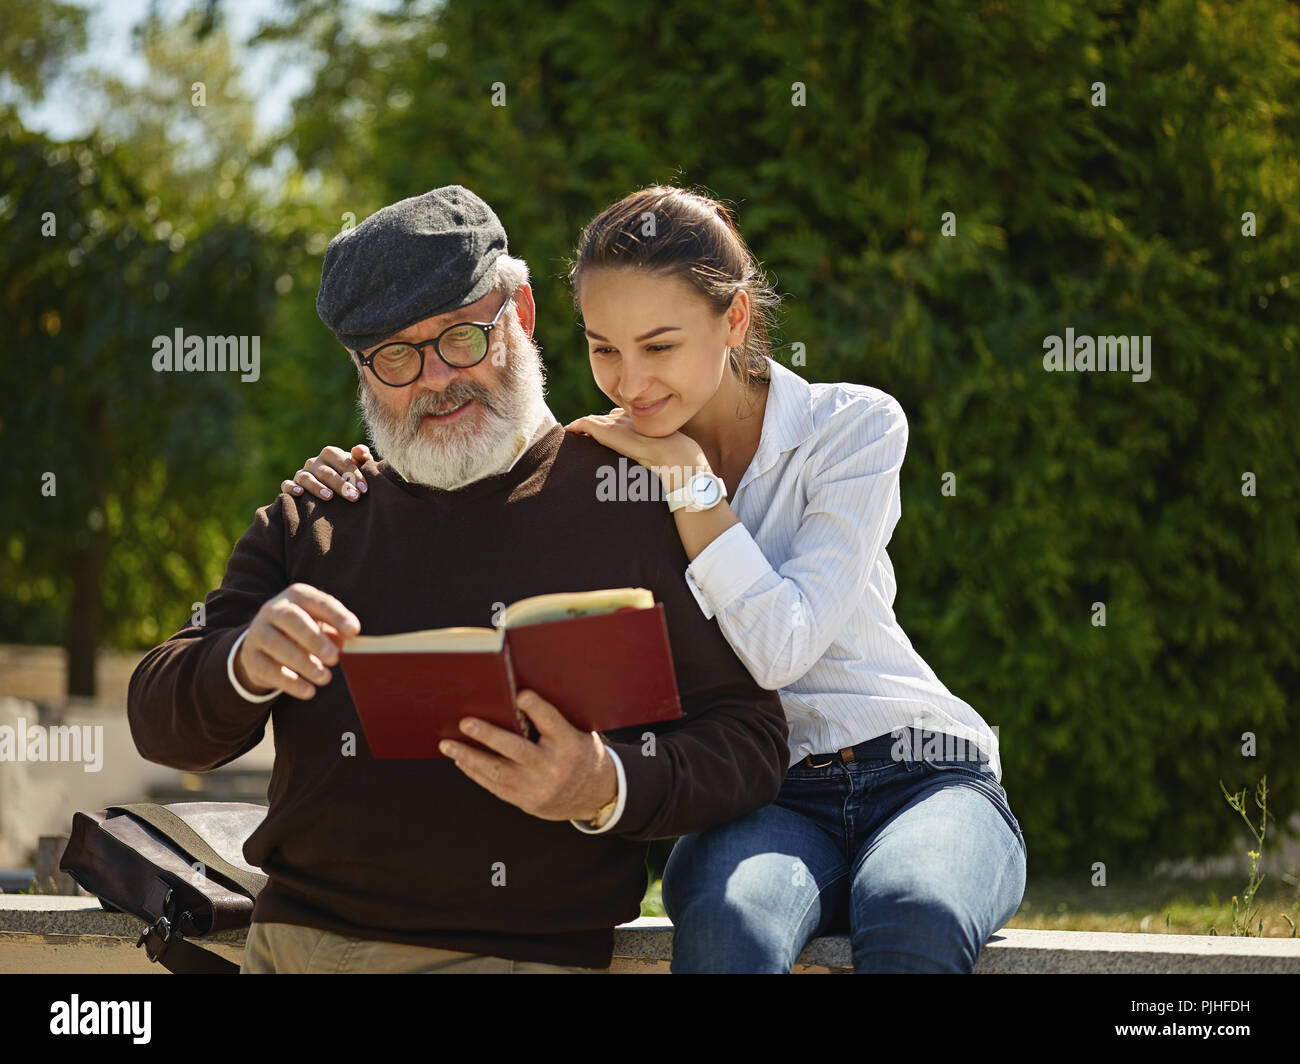 Helfen Sie jemandem, den Sie lieben. Portrait der junge lächelnde Mädchen umarmt Großvater mit Buch gegen City Park. Gemeinschaft und Familie lifestyle Konzept Stockfoto